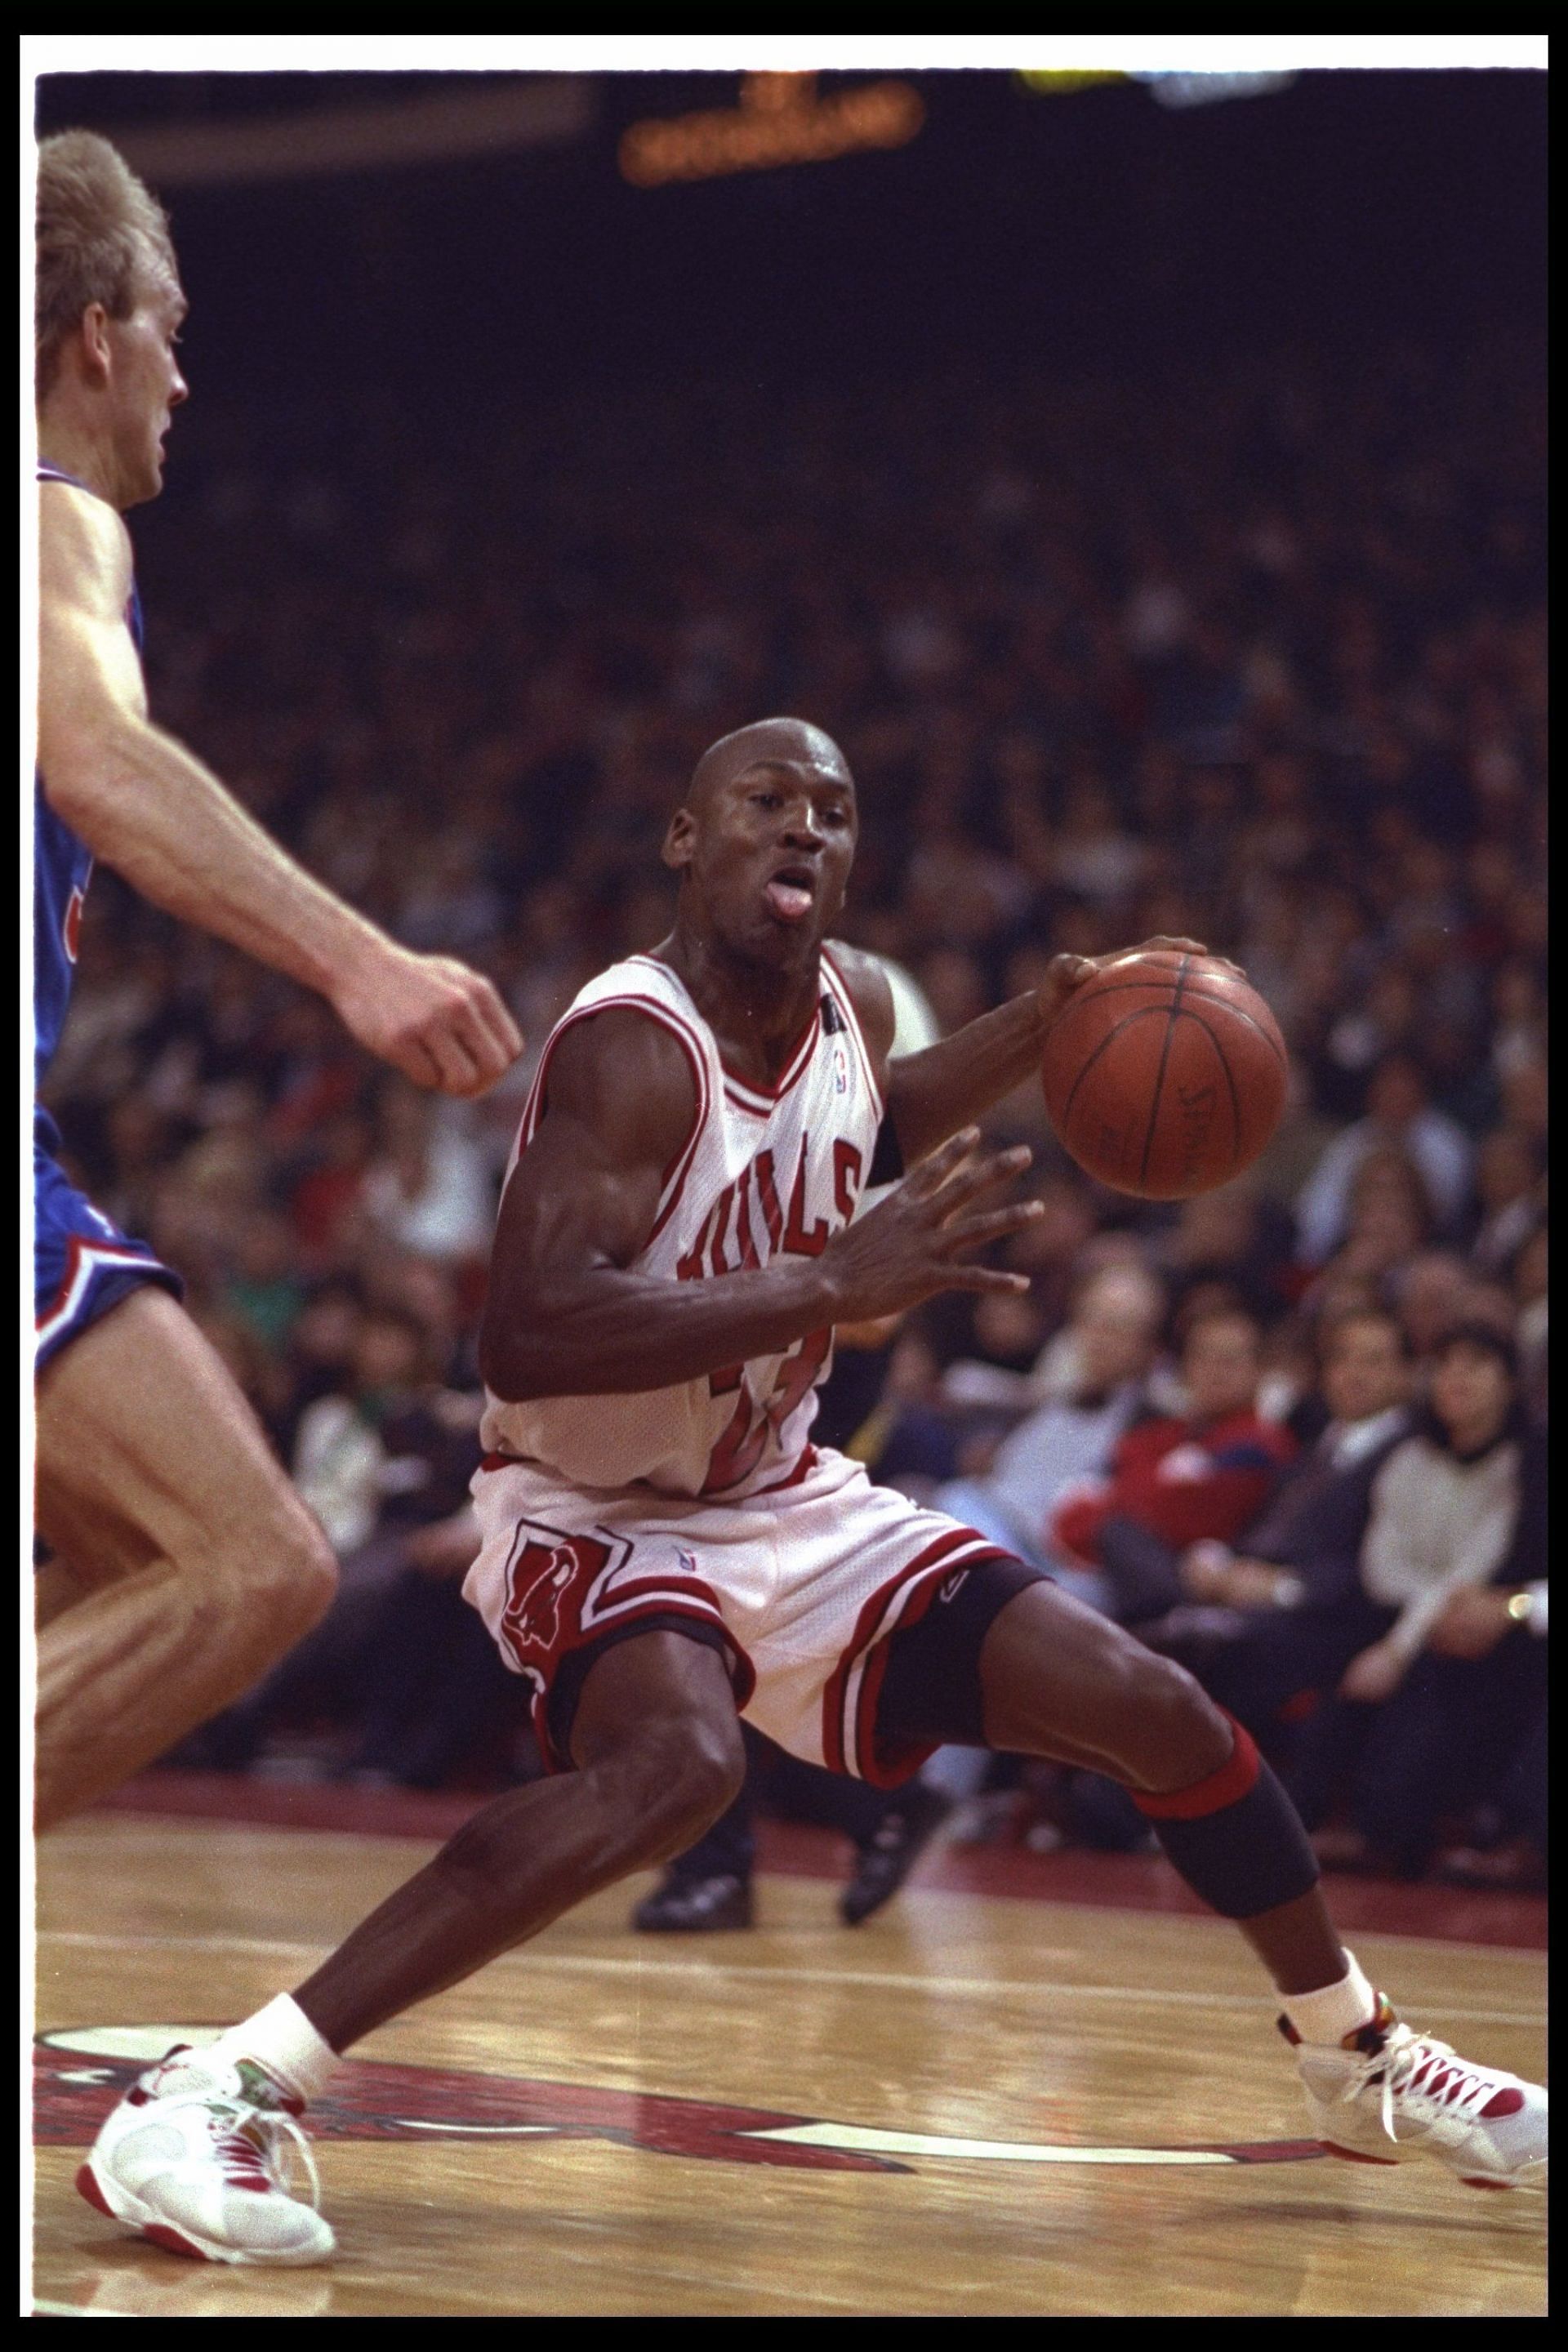 Michael Jordan, a six time NBA Champion